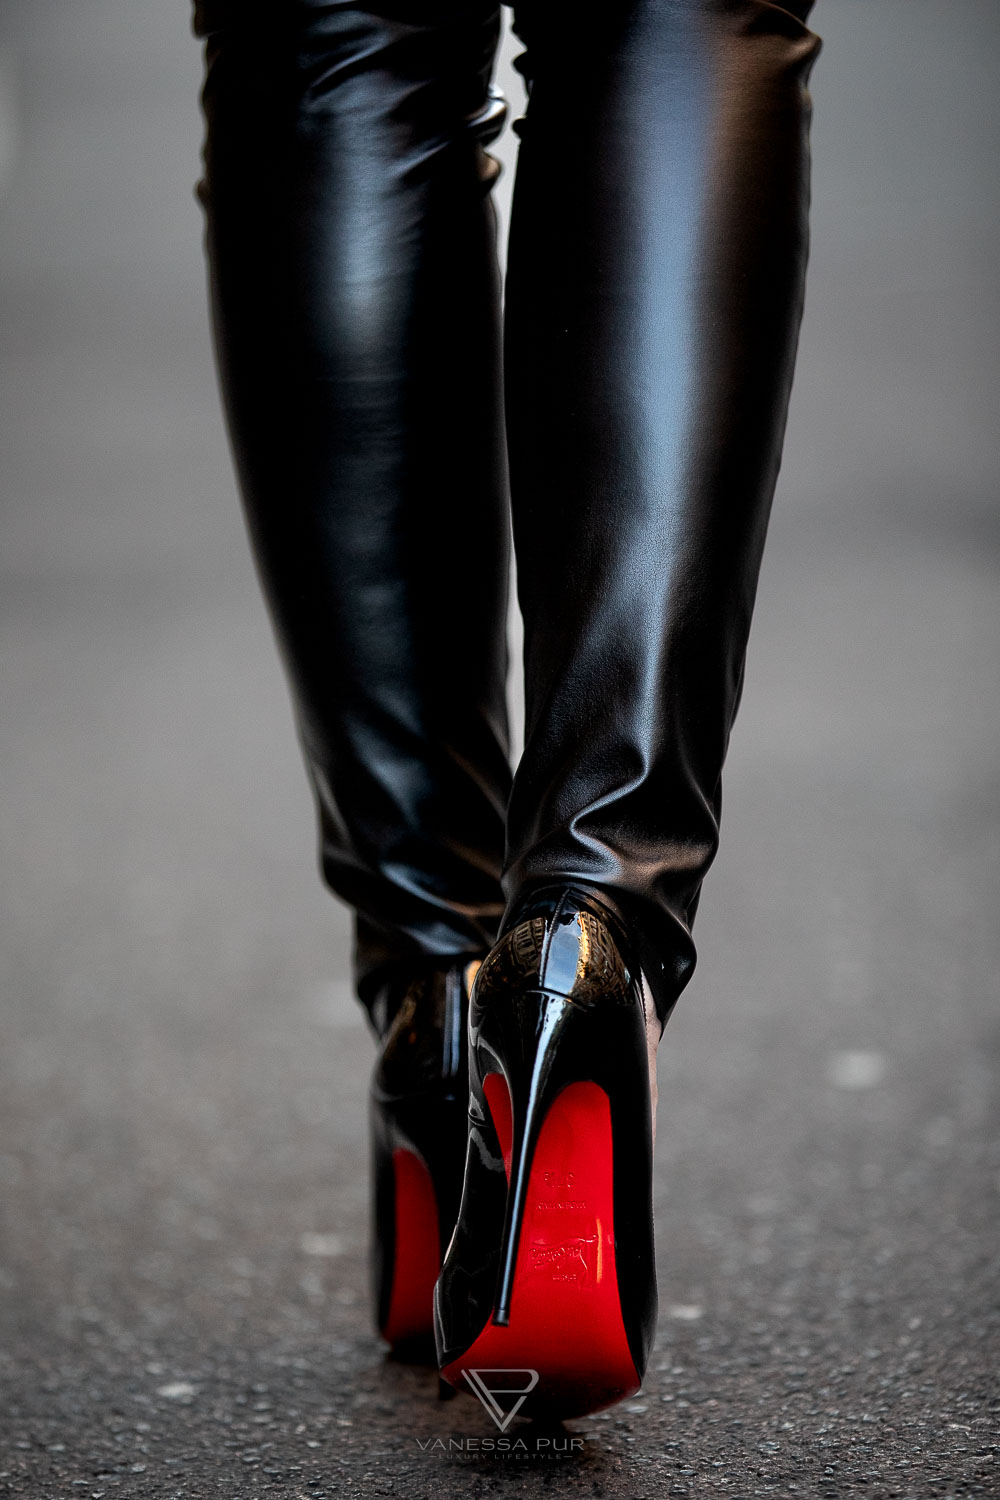 Louboutin High Heels kaufen - was sollte ich vorher wissen? Fashion Blog Hamburg - Designer Pumps Christian Louboutin - Modebloggerin und Luxusblog Vanessa Pur - VANESSA PUR - YouTube Channel - Patreon Girl - Instagram - Feminine elegant fashion looks always with high heels